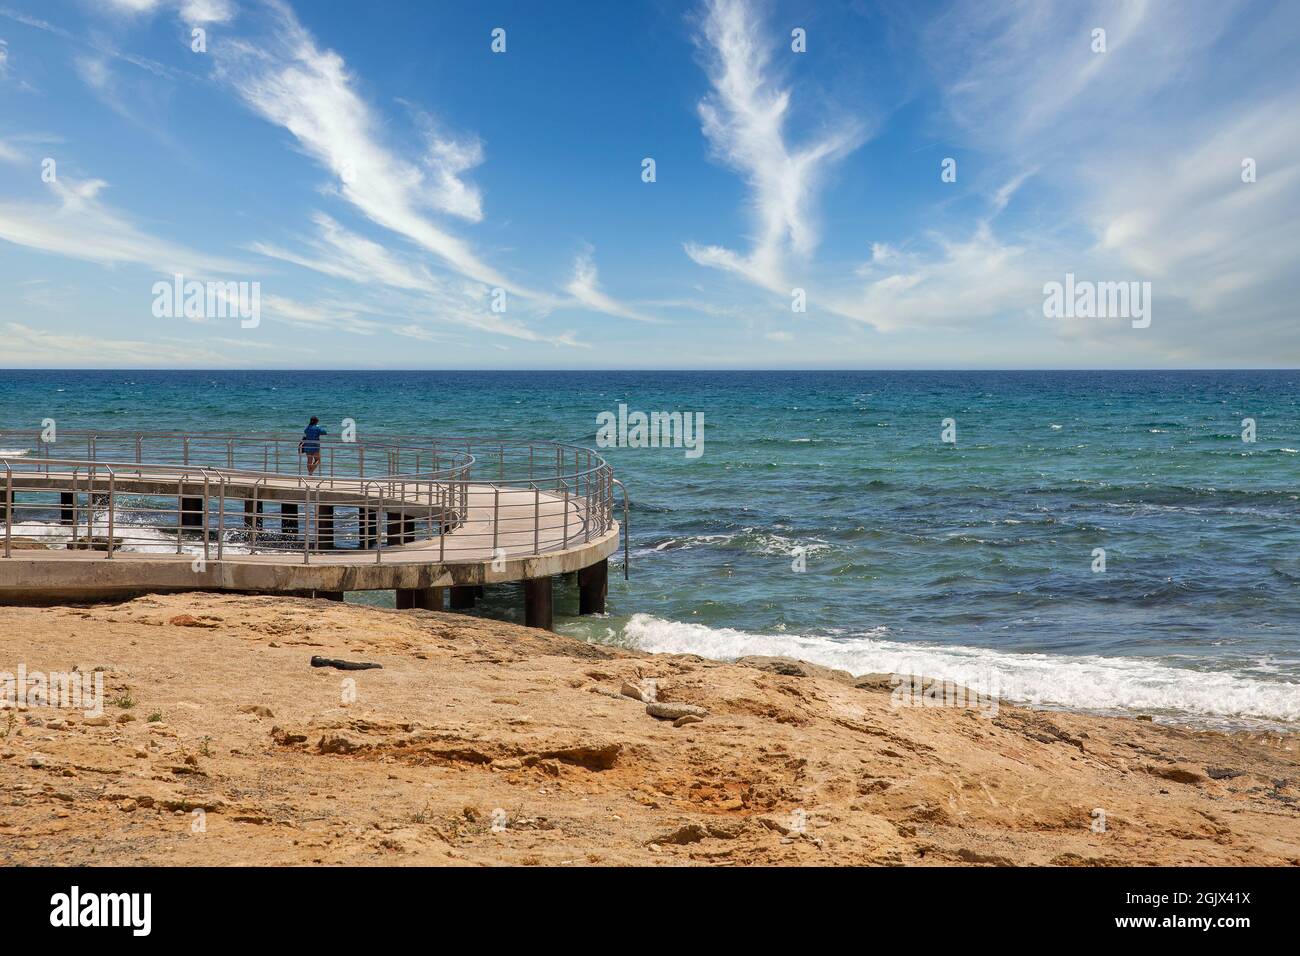 Femme seule sur la plage Ayia Napa promenade front de mer, Chypre. Banque D'Images